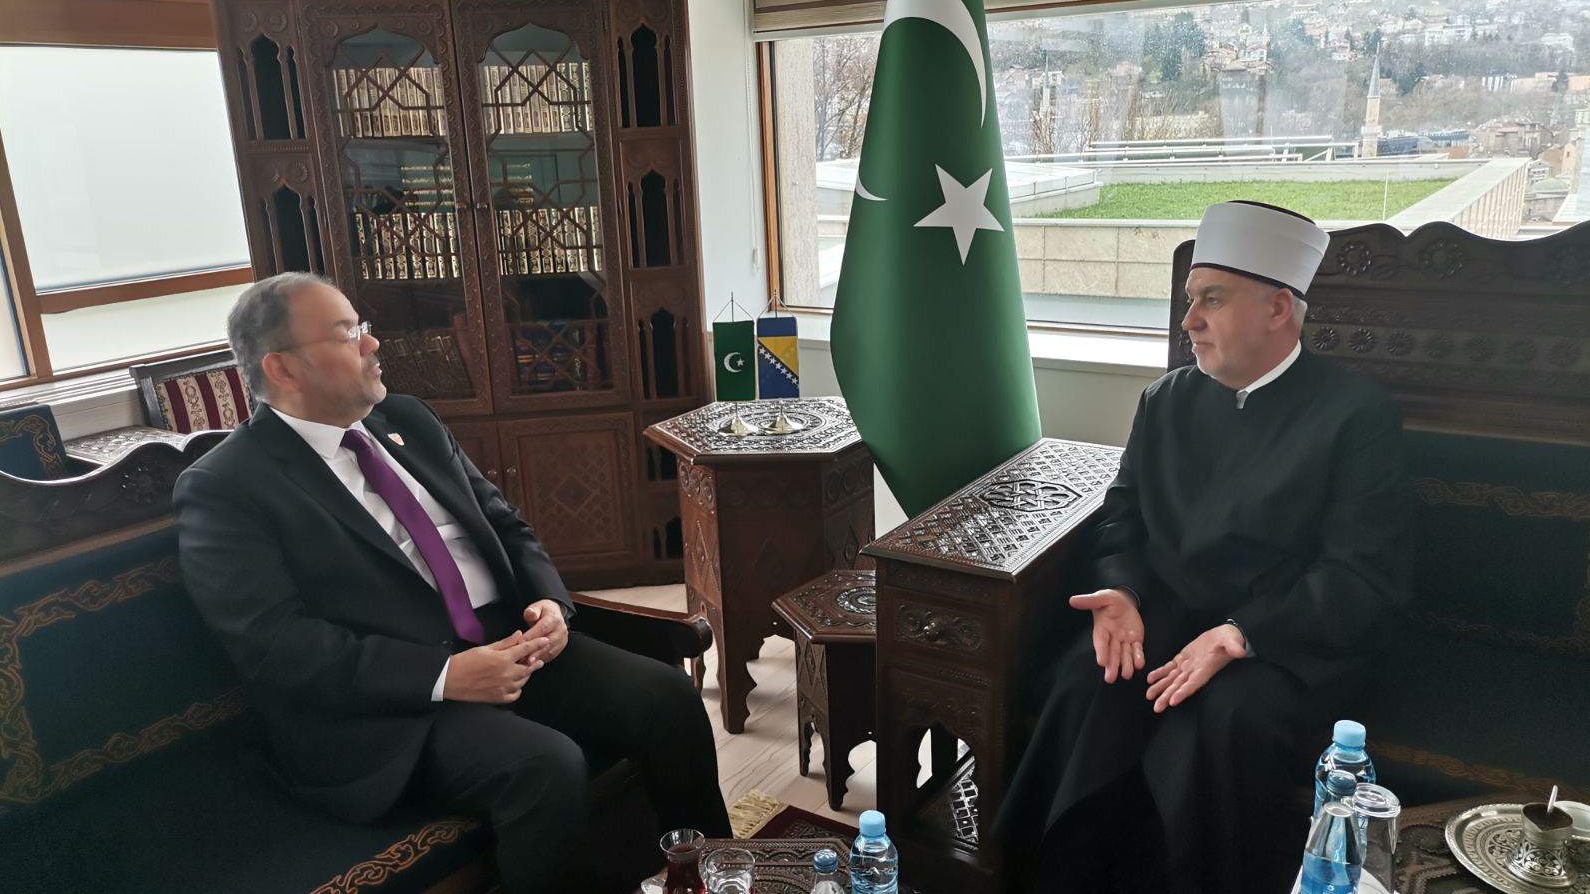 Reisul-ulemu posjetili ambasadori Bahreina i Egipta